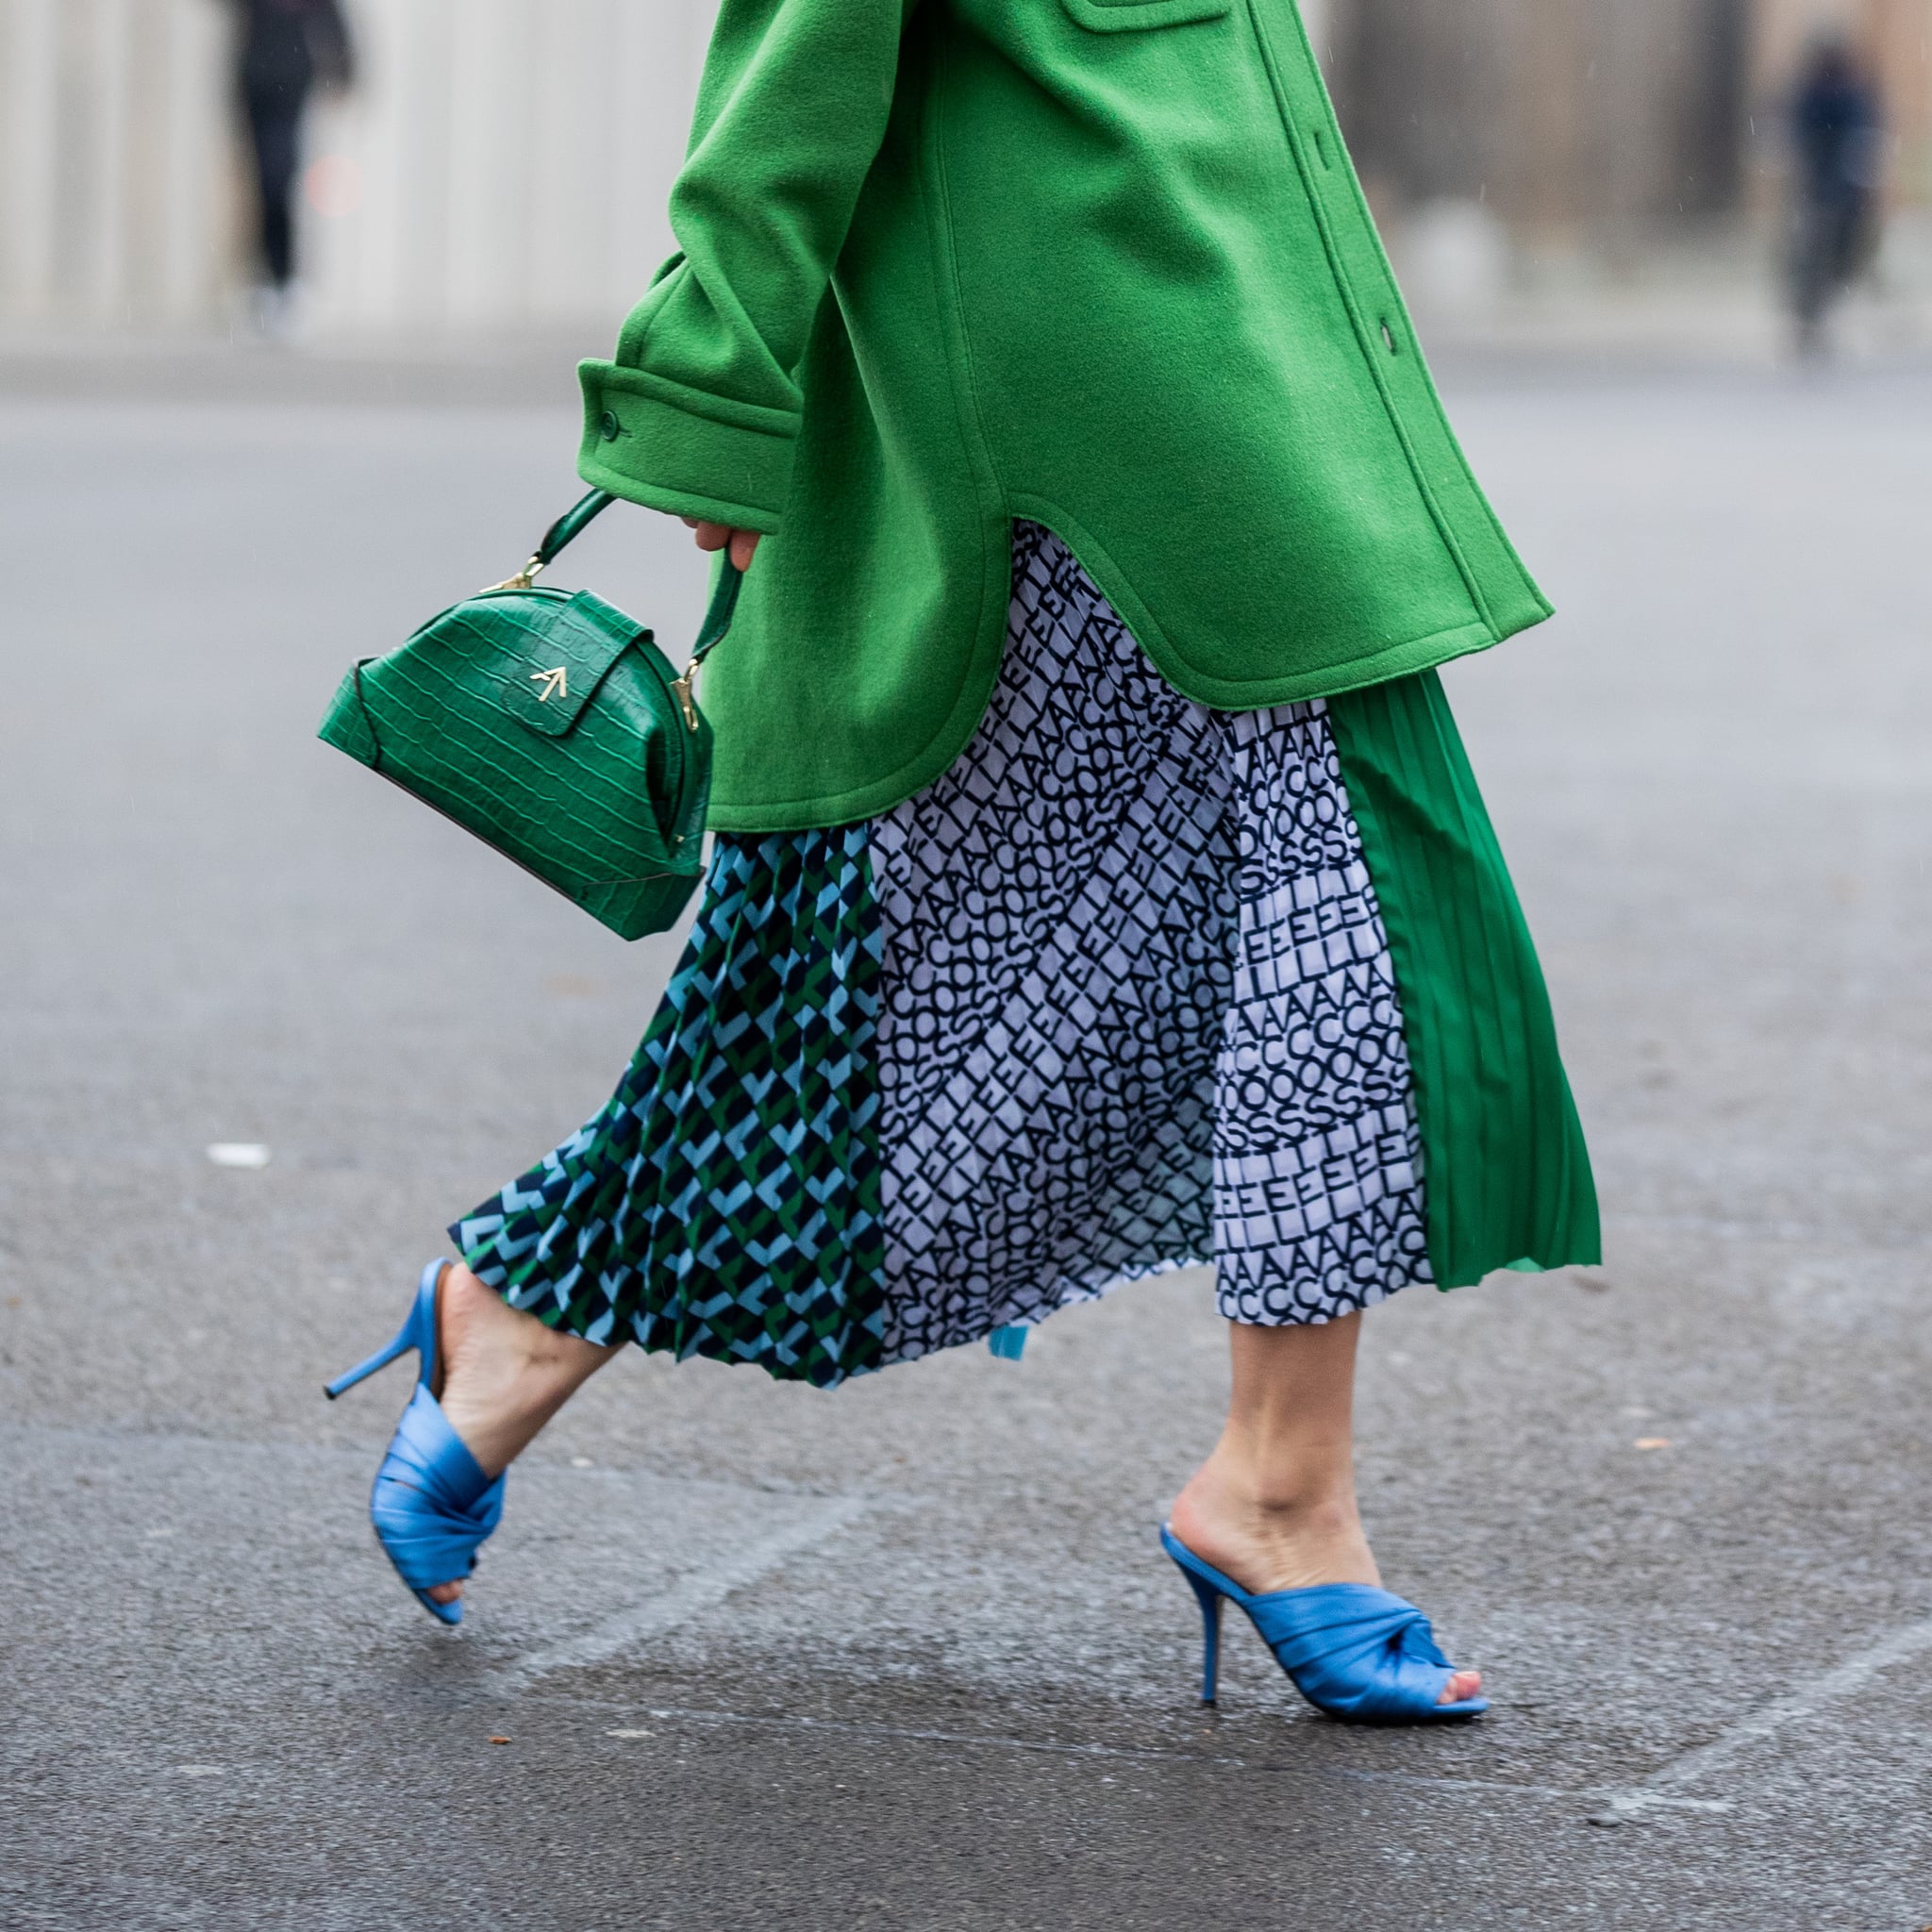 New Handbag Trends to Know For 2020 | POPSUGAR Fashion